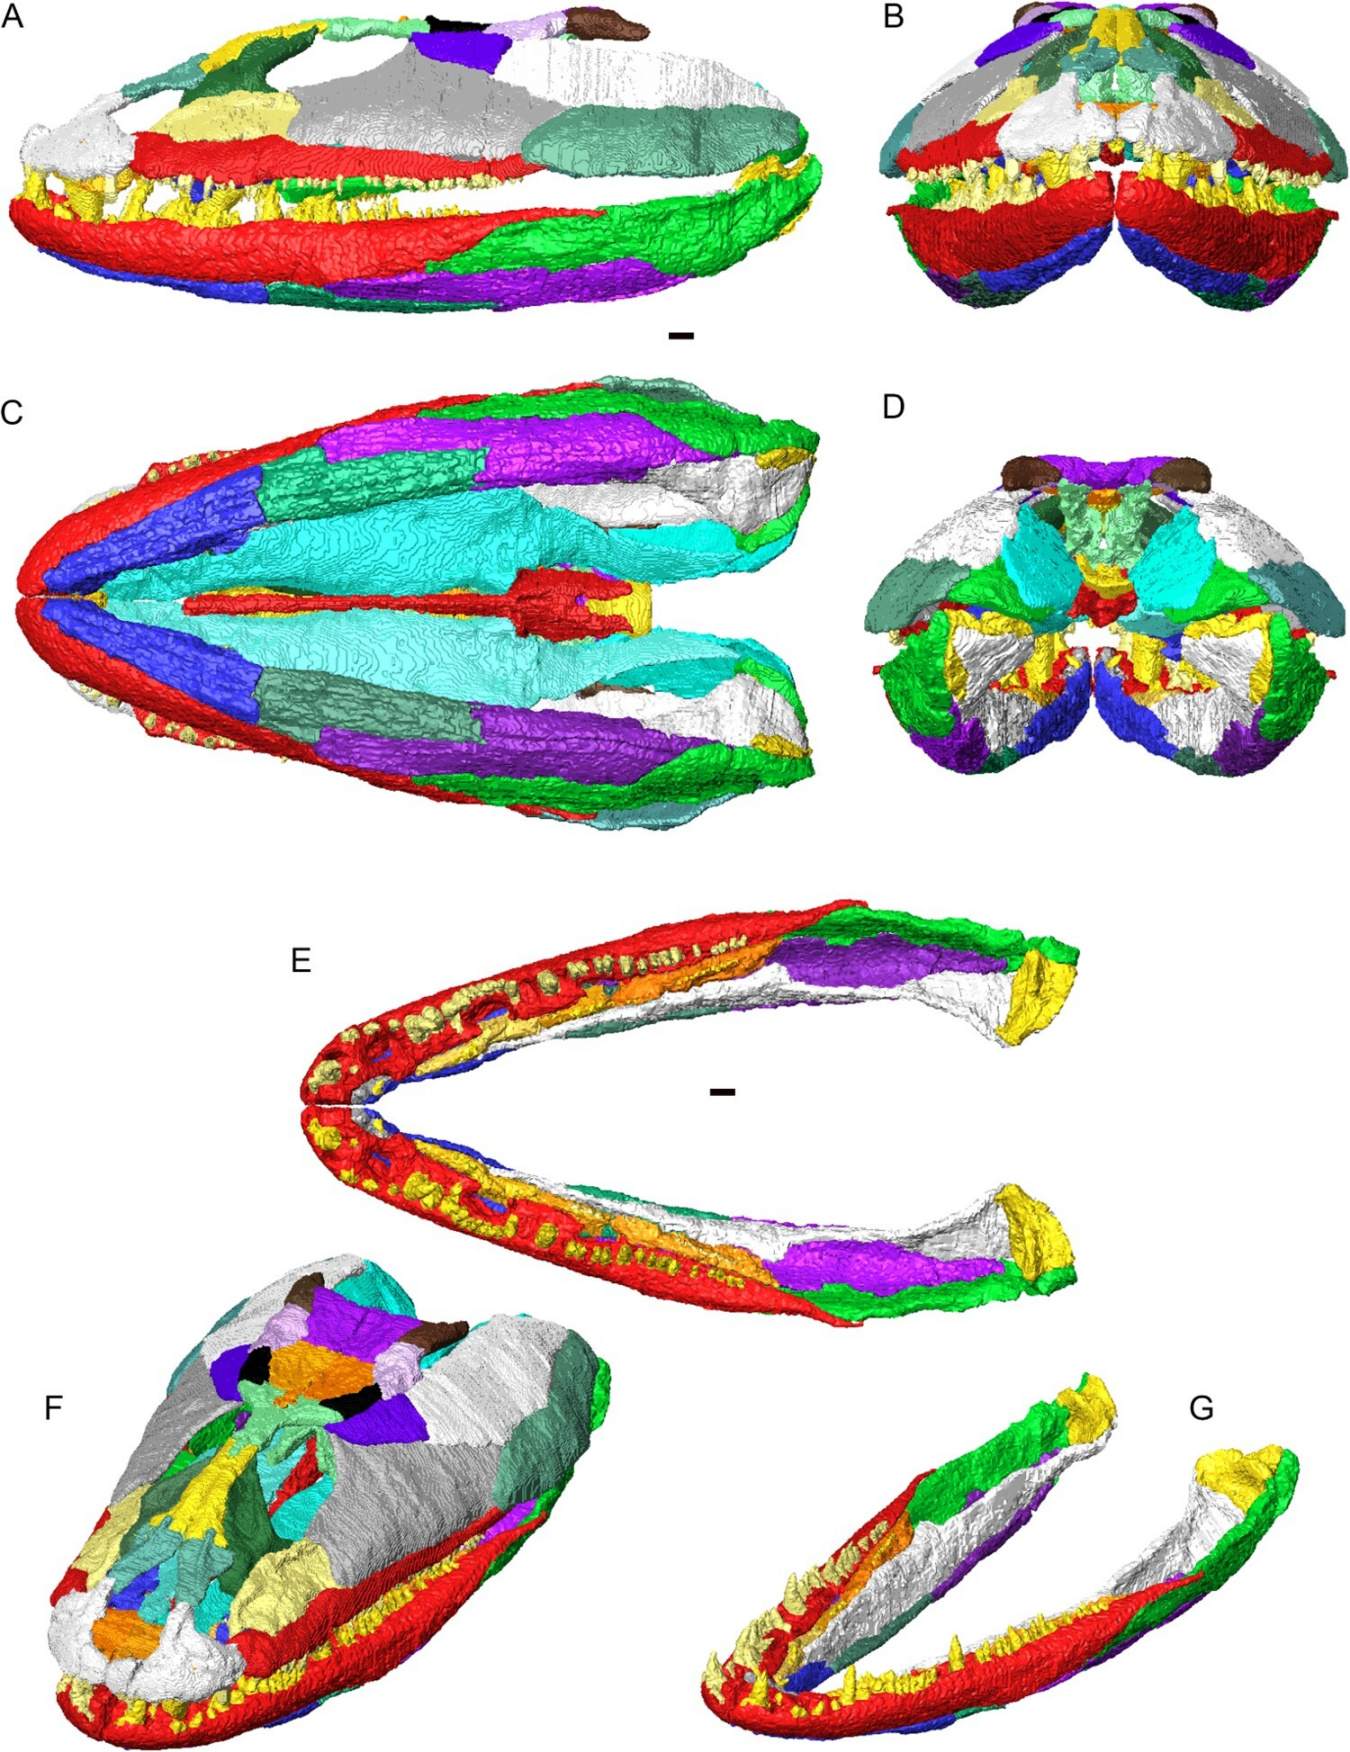 3D-reconstructie van de schedel en onderkaak van Crassigyrinus scoticus in articulatie. Individuele botten weergegeven in verschillende kleuren. A, zijaanzicht links; B, vooraanzicht; C, buikaanzicht; D, achteraanzicht; E, gearticuleerde onderkaken (geen schedel) in dorsaal aanzicht; F, schedel en onderkaak in dorsolateraal schuin aanzicht; G, gearticuleerde onderkaken in dorsolateraal schuin aanzicht.